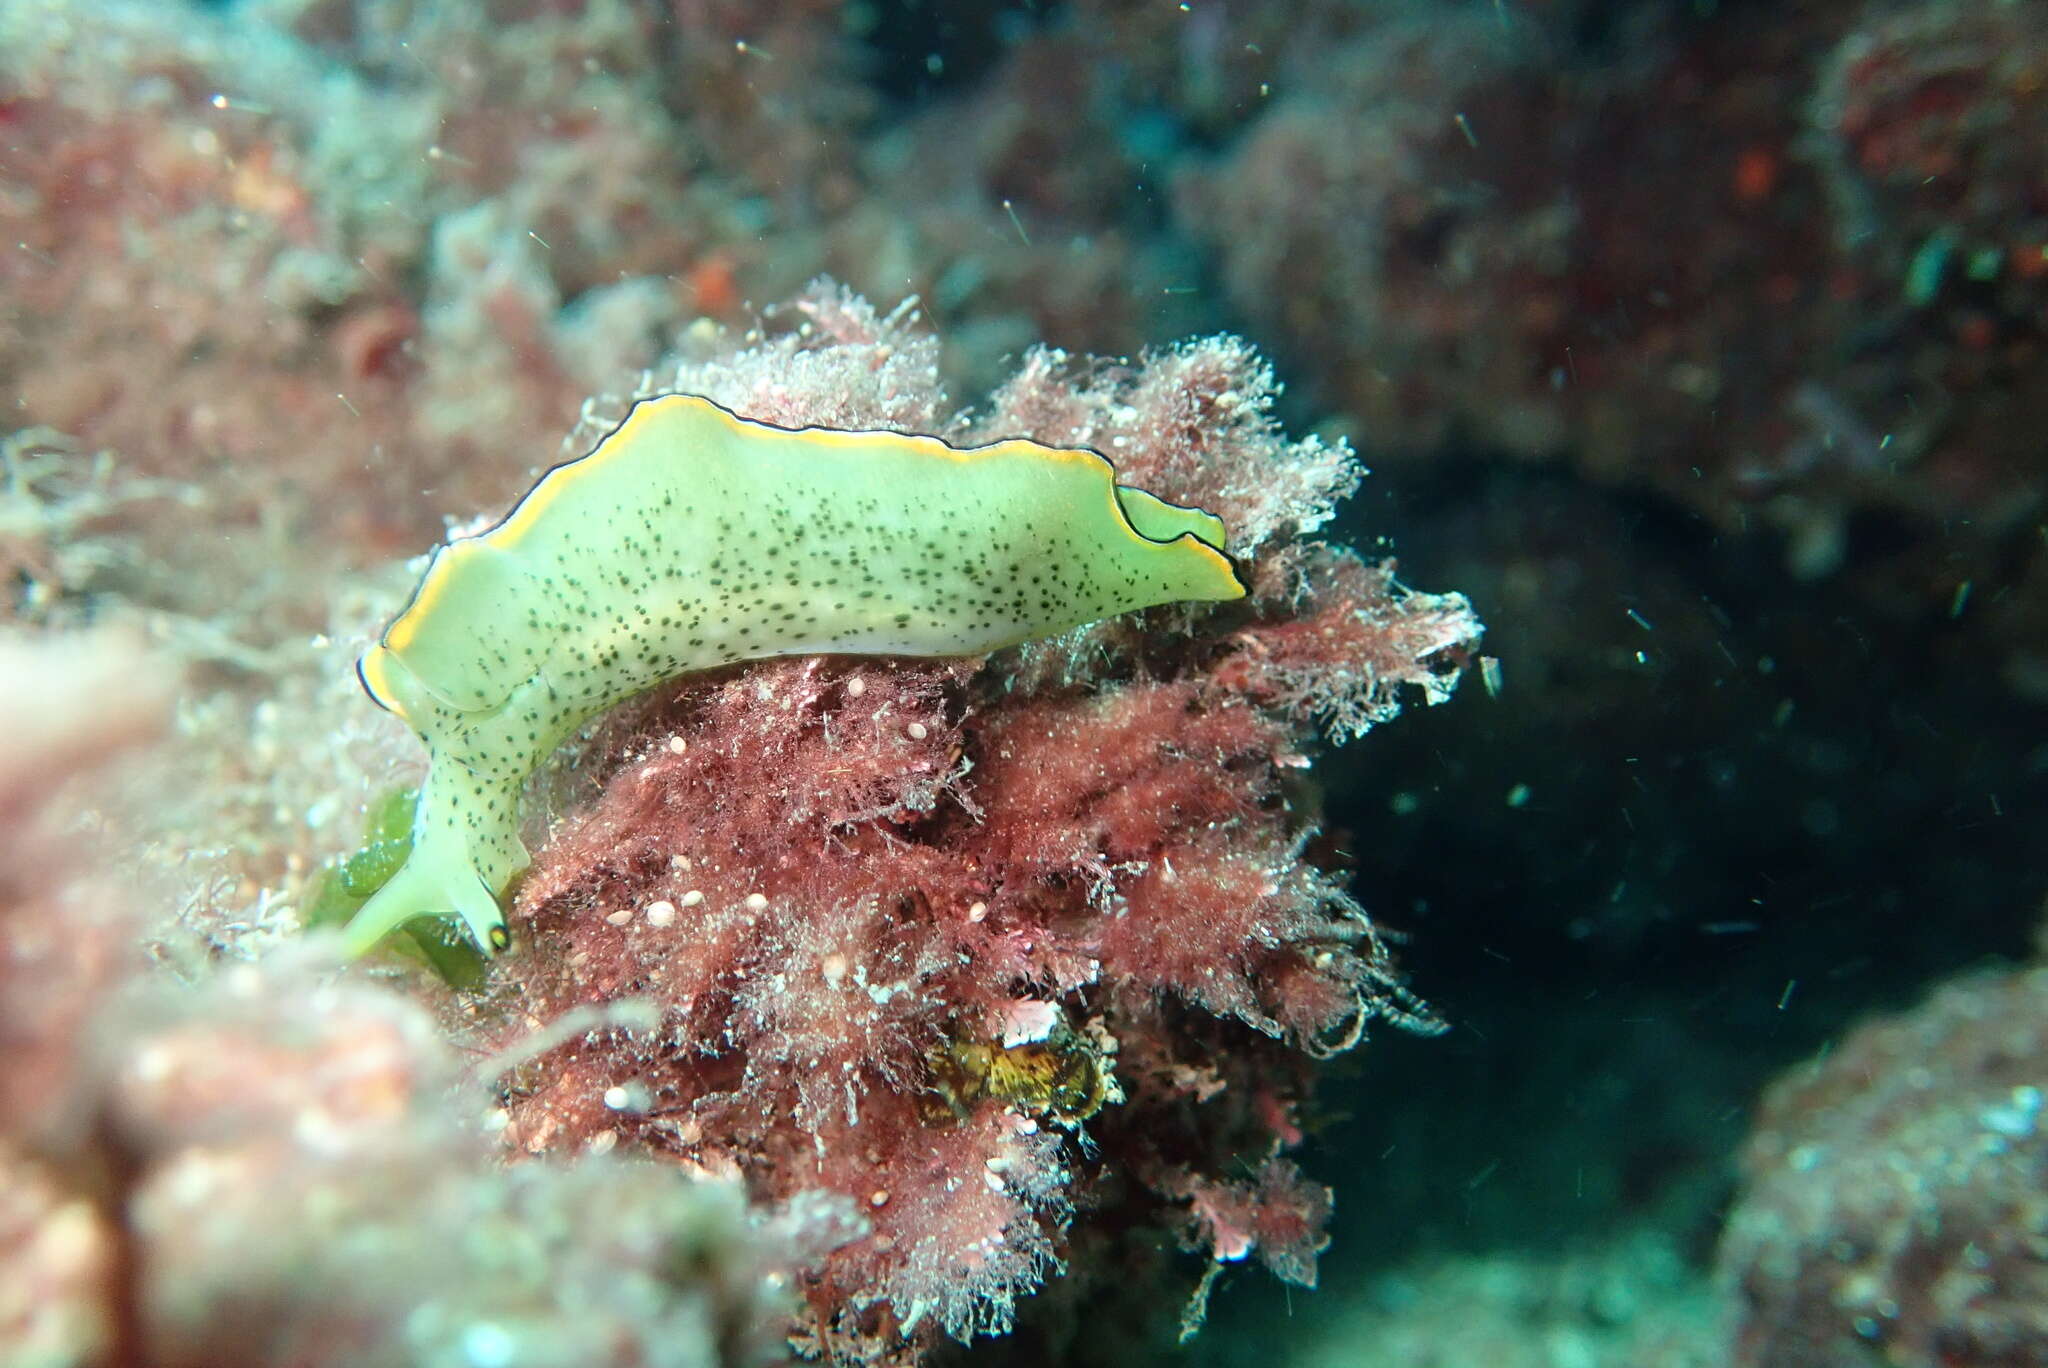 Image of lettuce slug